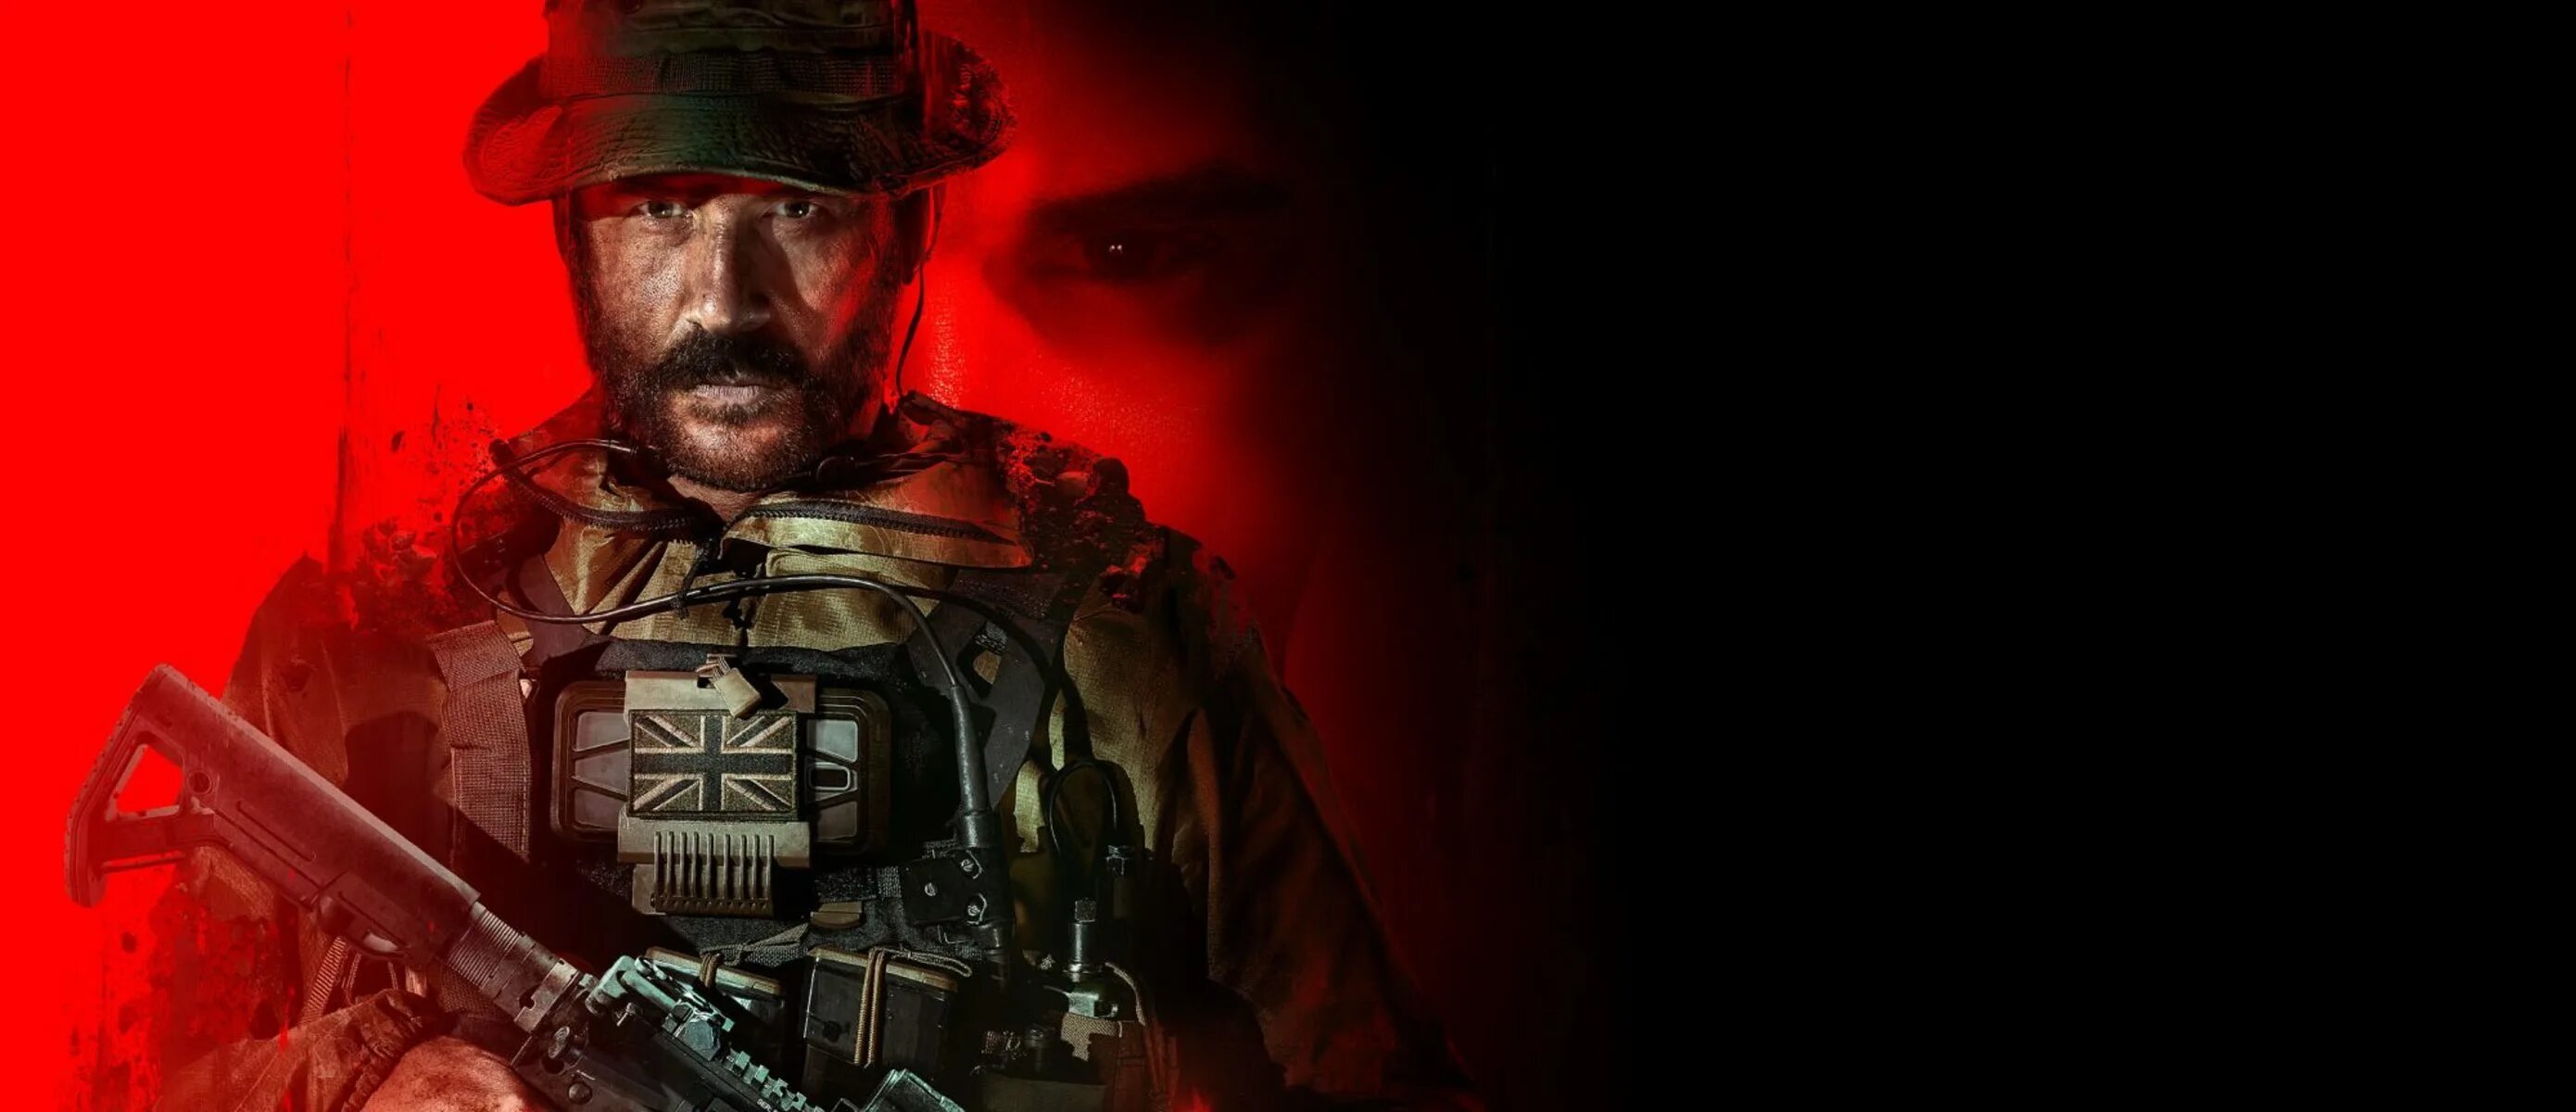 Call of duty mw 2023. Call of Duty Modern Warfare Warzone 3. Cod mw3 2023. Call of Duty: Modern Warfare 3. Call of Duty 4 Modern Warfare Price.